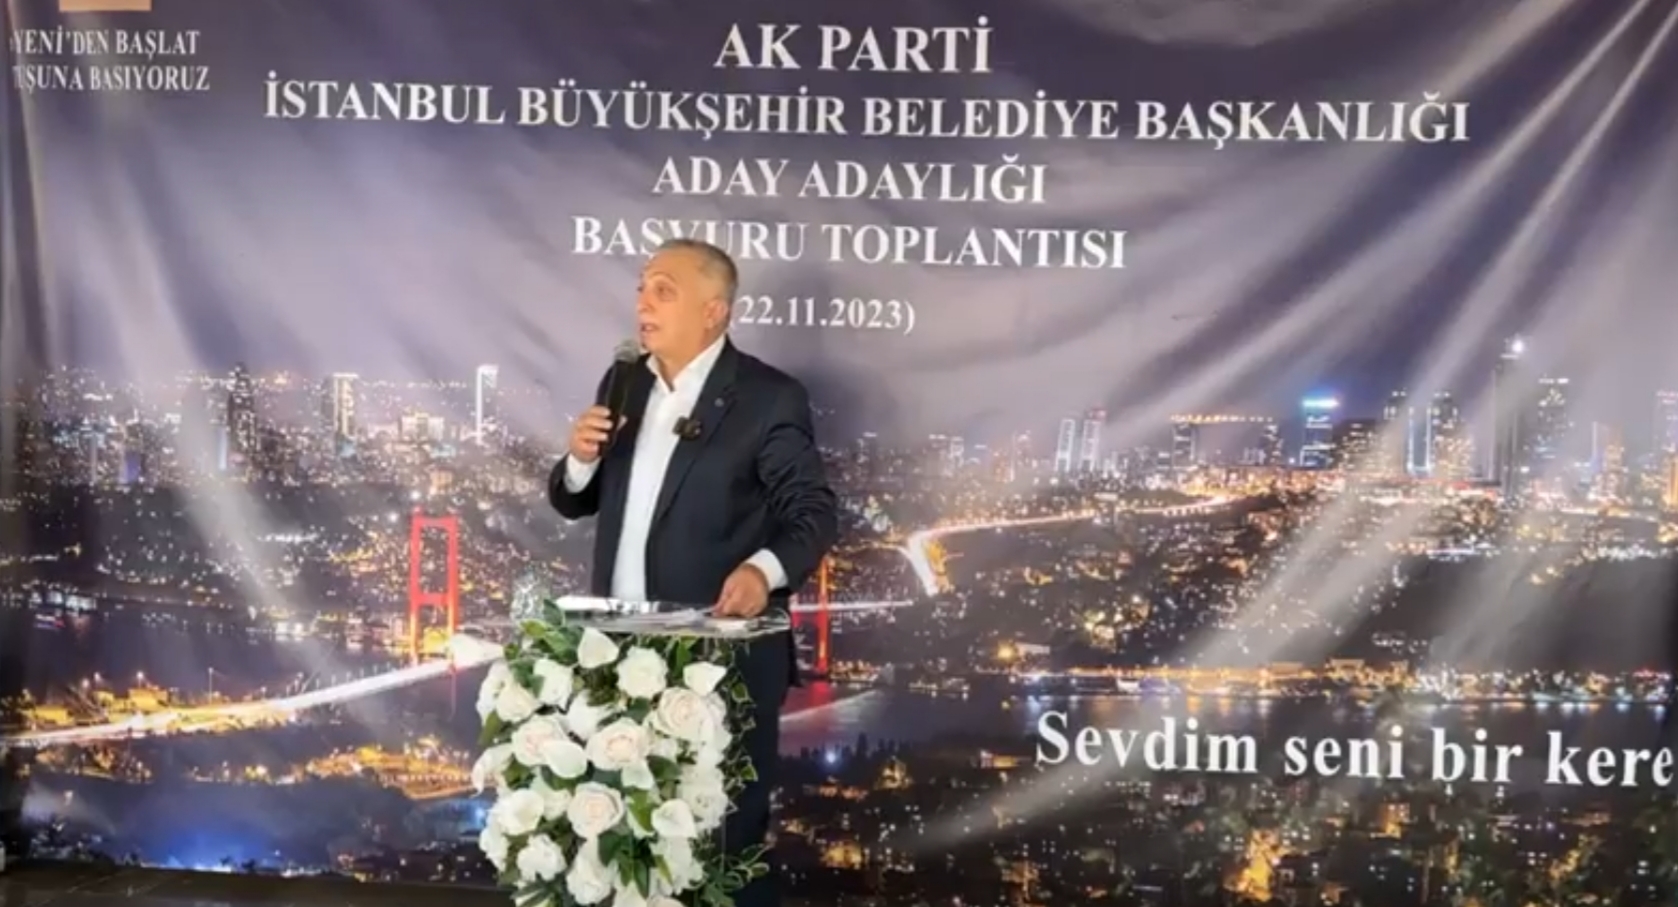 Metin Külünk ,İstanbul’dan aday adaylığını açıkladı